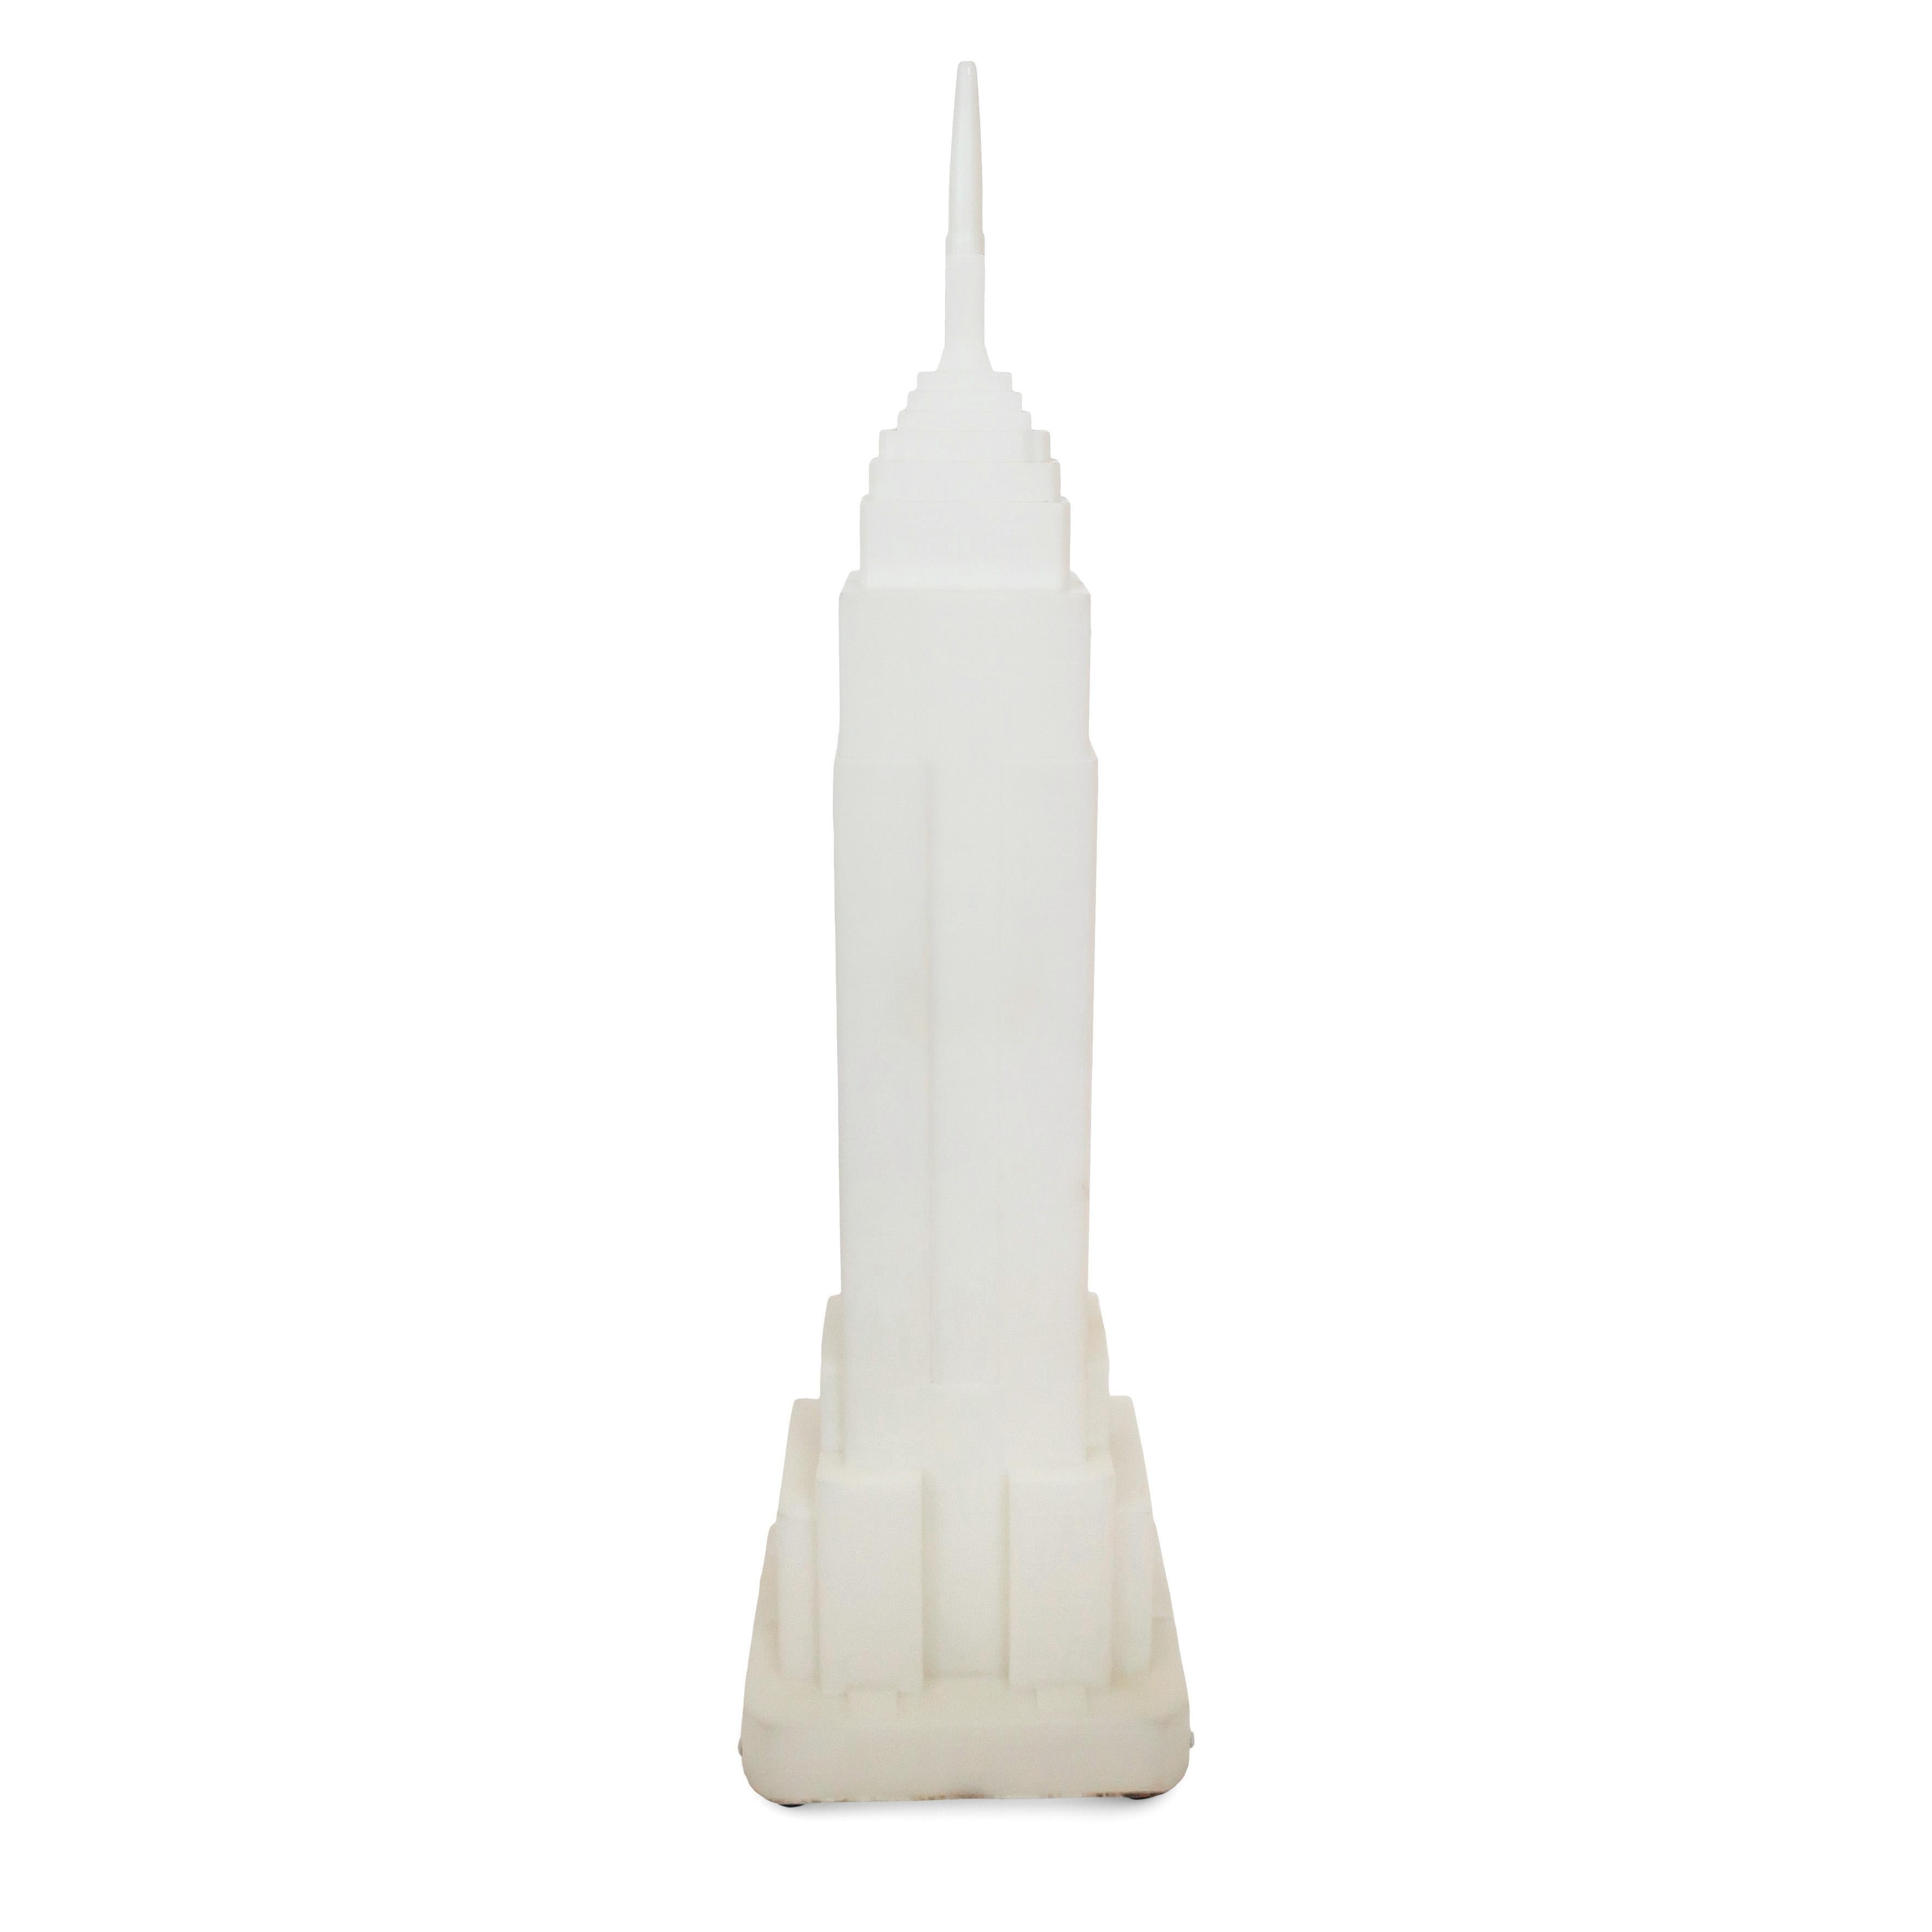 Une fantastique et très rare lampe en plastique conçue par Takahashi Denson sous la forme de l'emblématique Empire State Building de New York. Fabriquée par Midori au Japon dans les années 1980, cette lampe est une superbe version postmoderne/pop